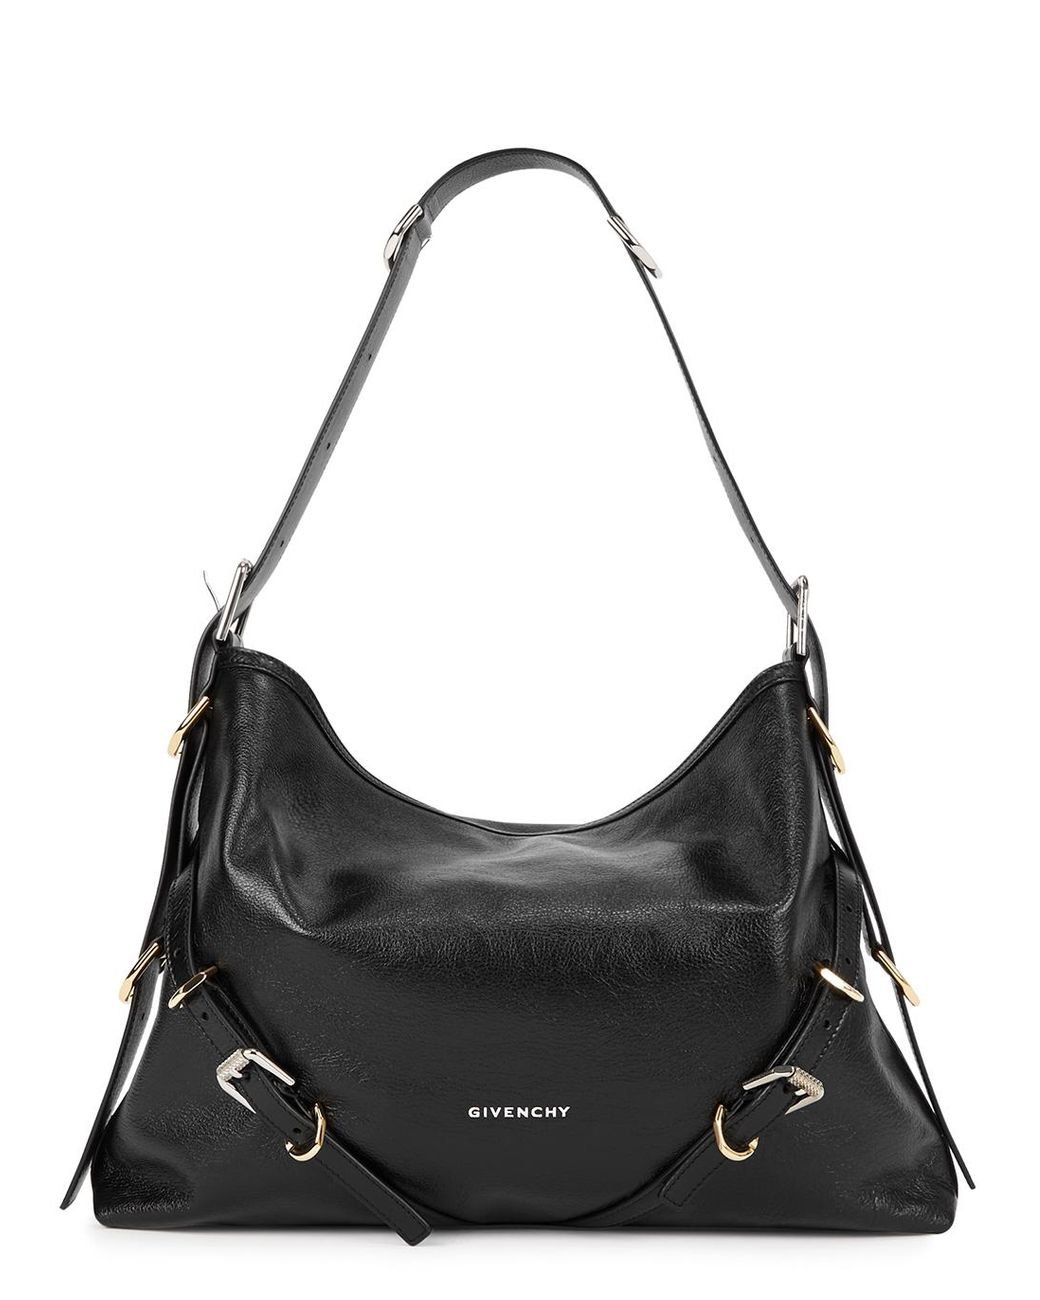 Givenchy Voyou Medium Leather Shoulder Bag in Black | Lyst